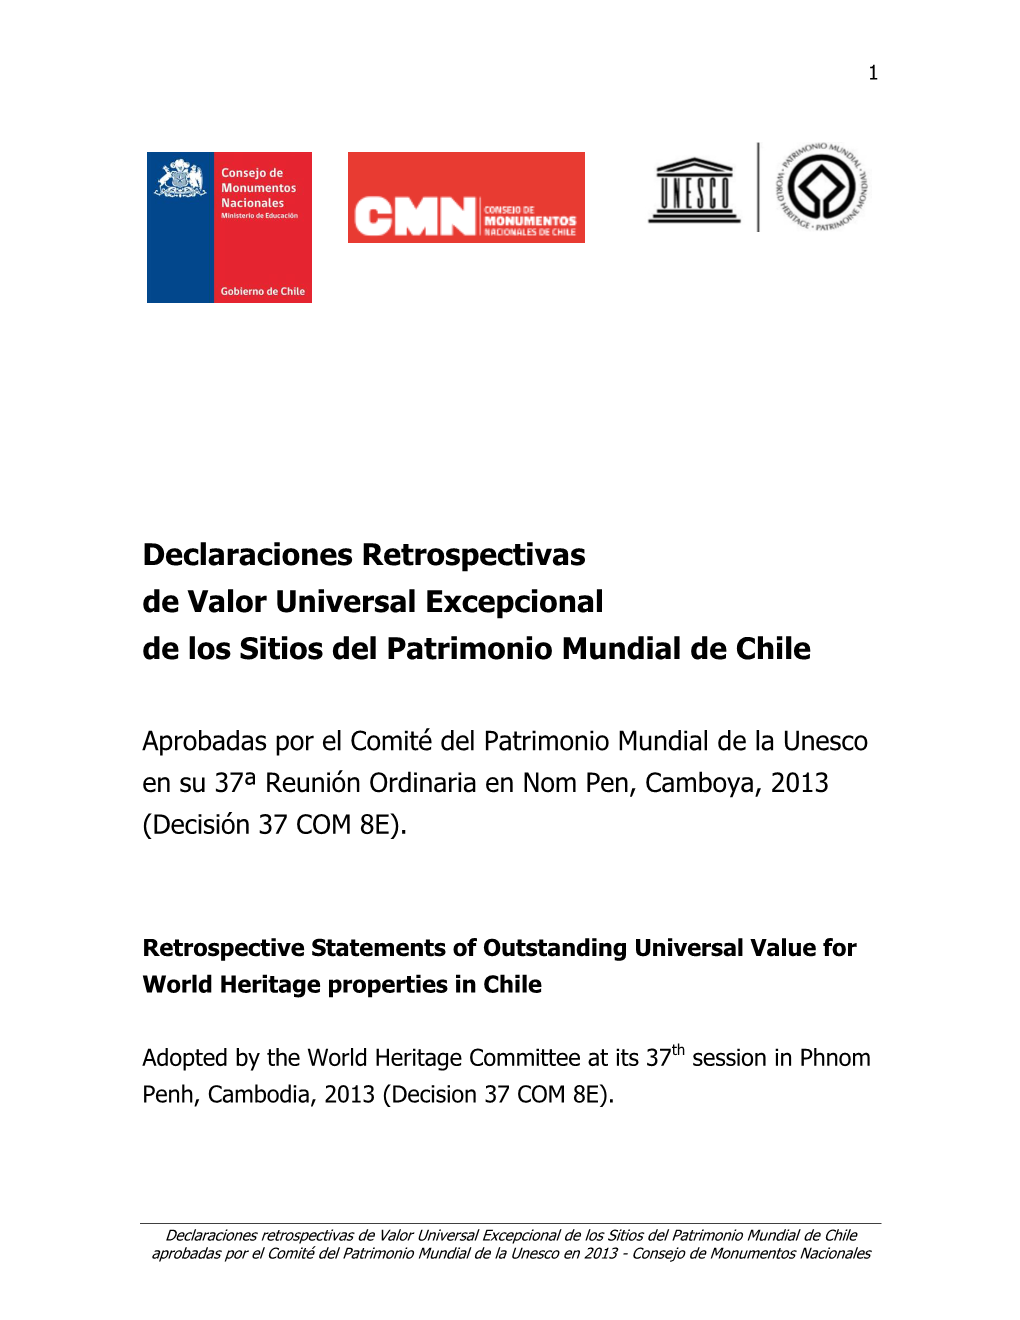 Declaraciones Retrospectivas De Valor Universal Excepcional De Los Sitios Del Patrimonio Mundial De Chile